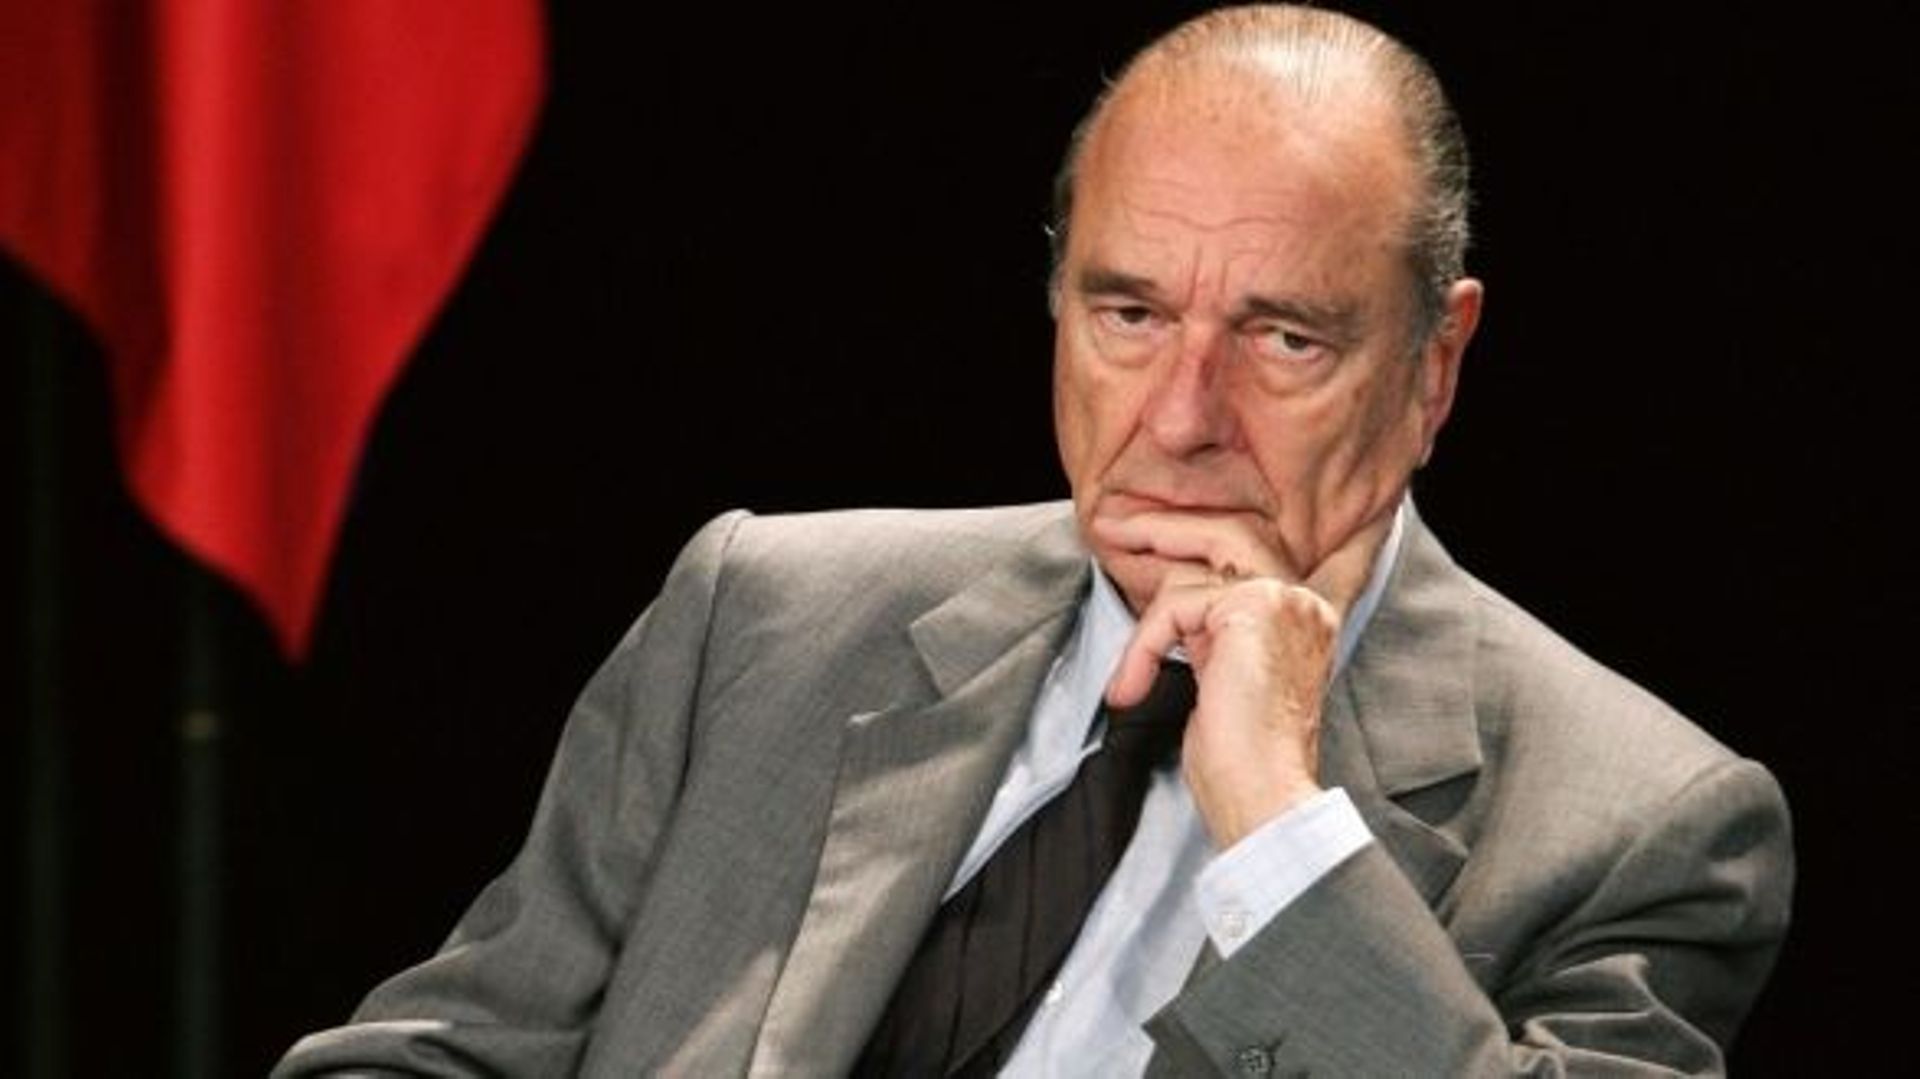 Le procès pour emplois fictifs de J. Chirac reporté à mars